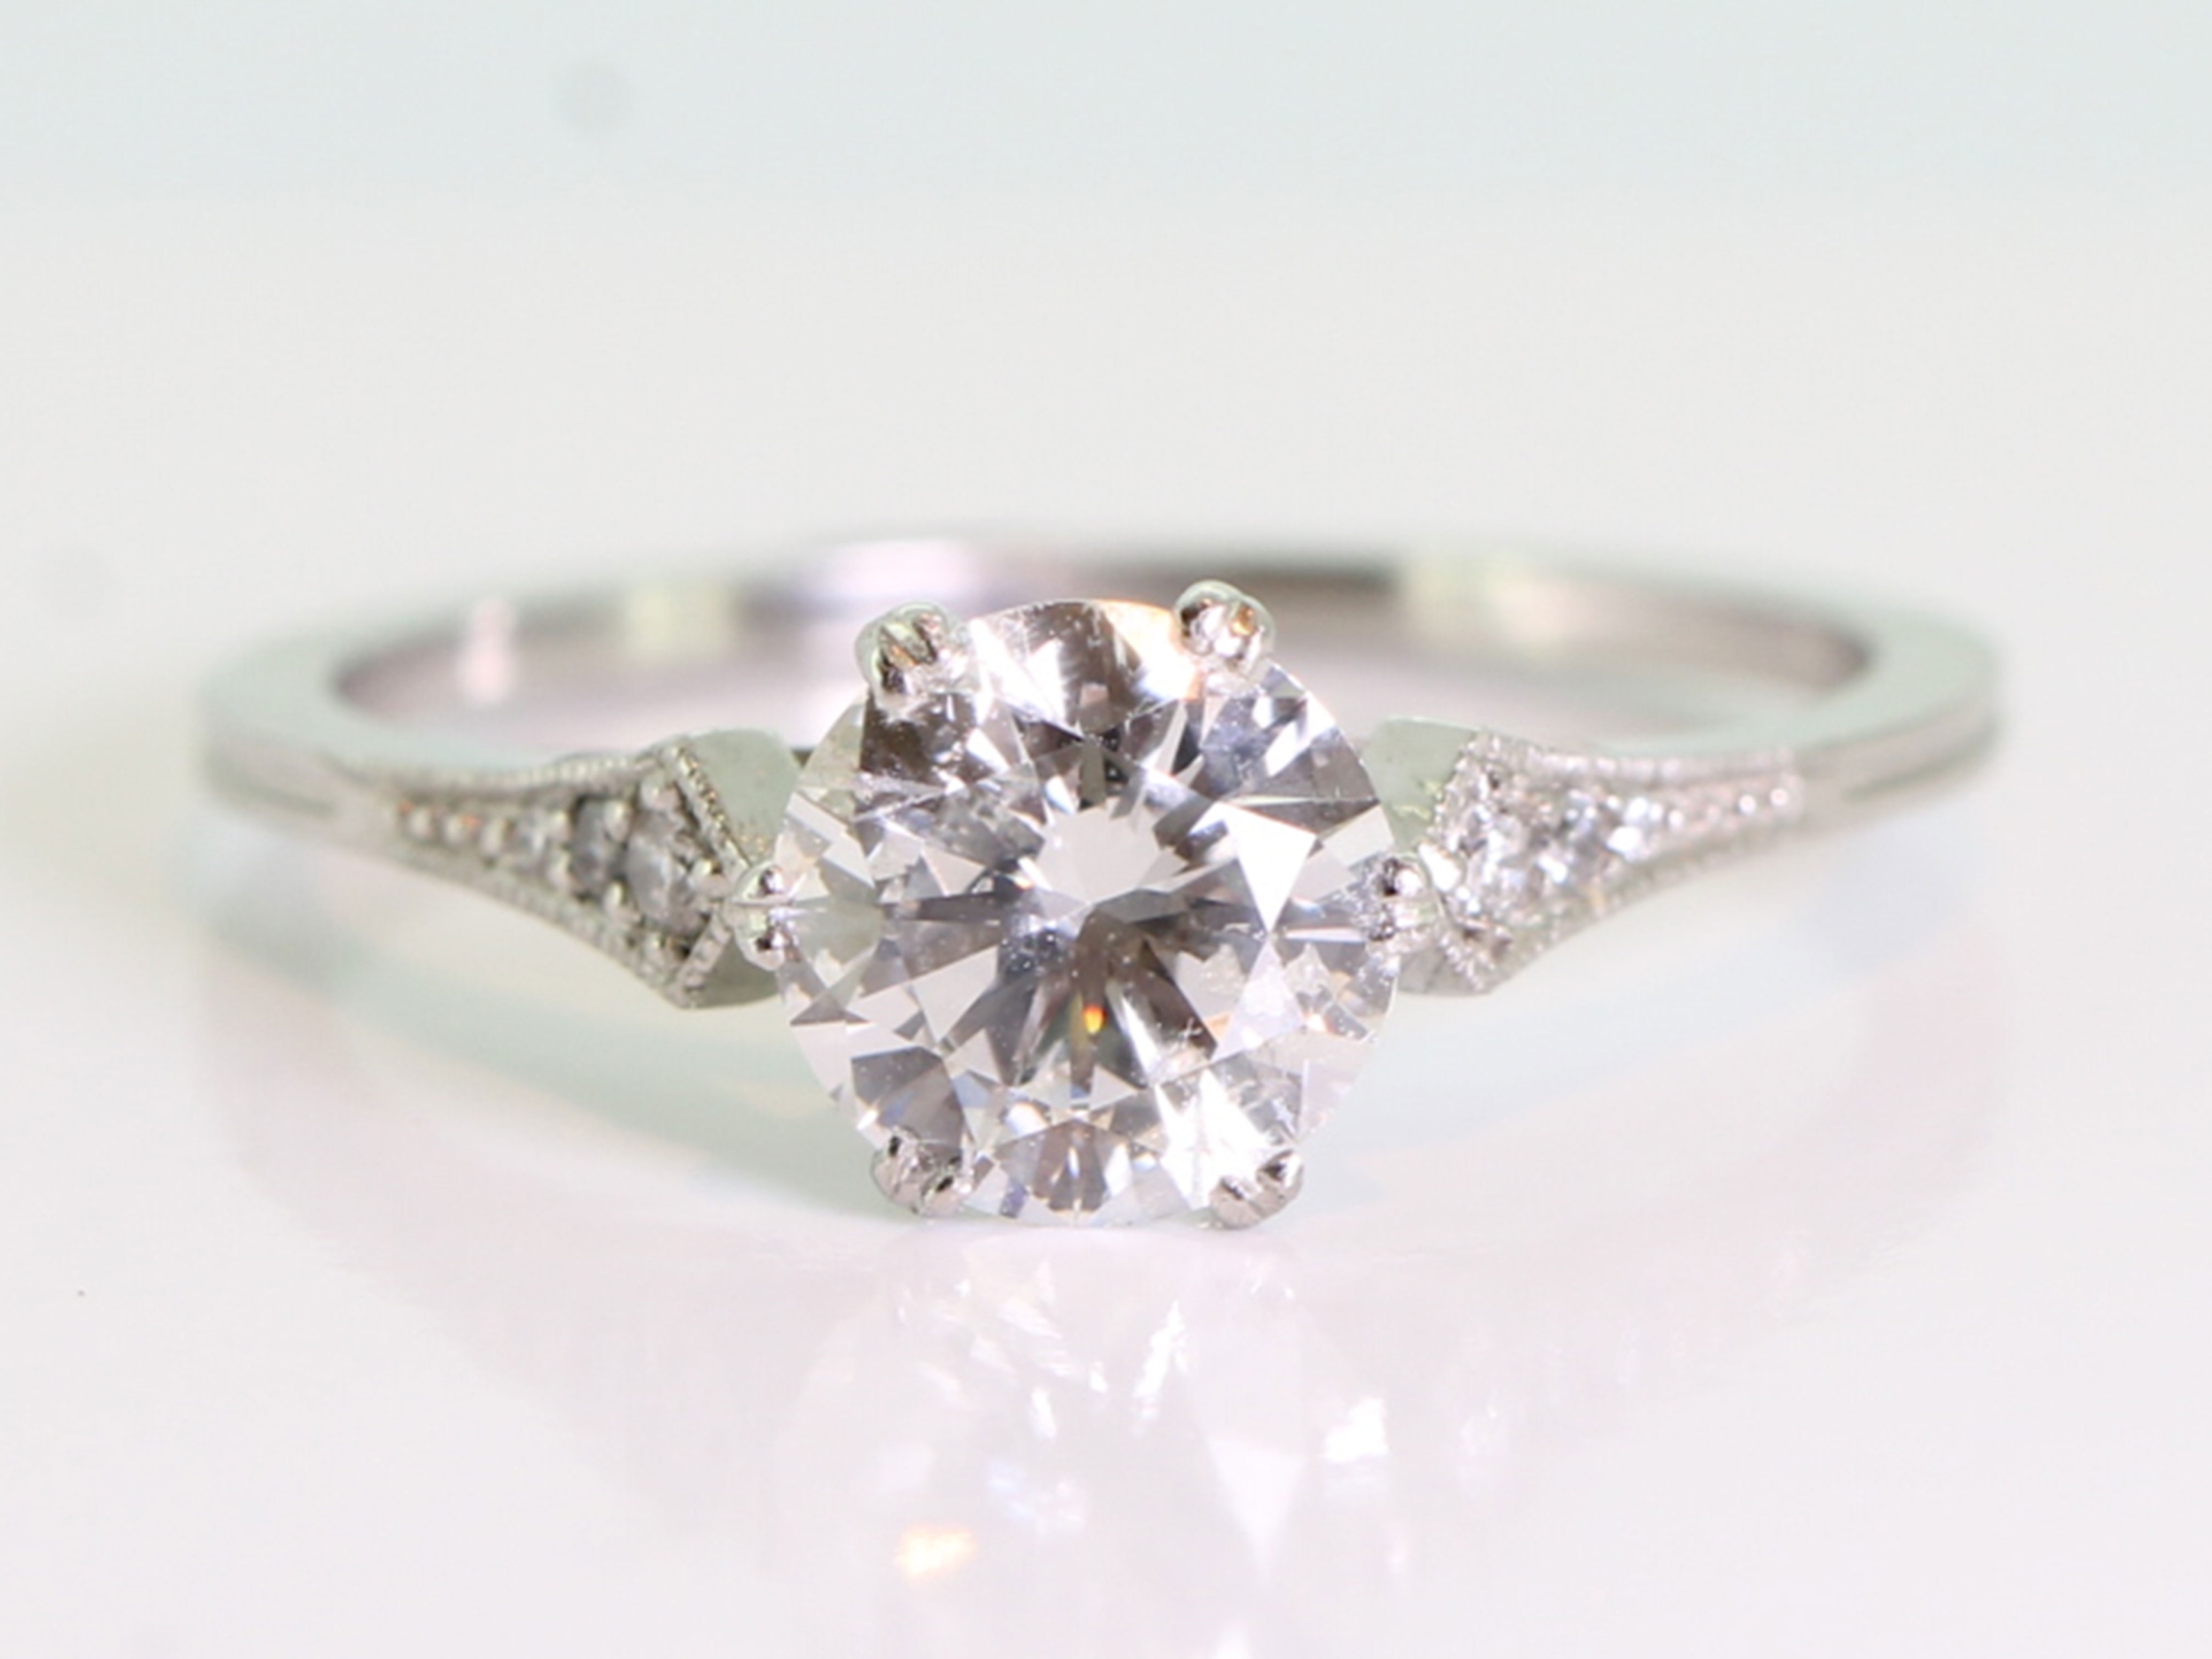 Elegant art deco style diamond solitaire platinum ring